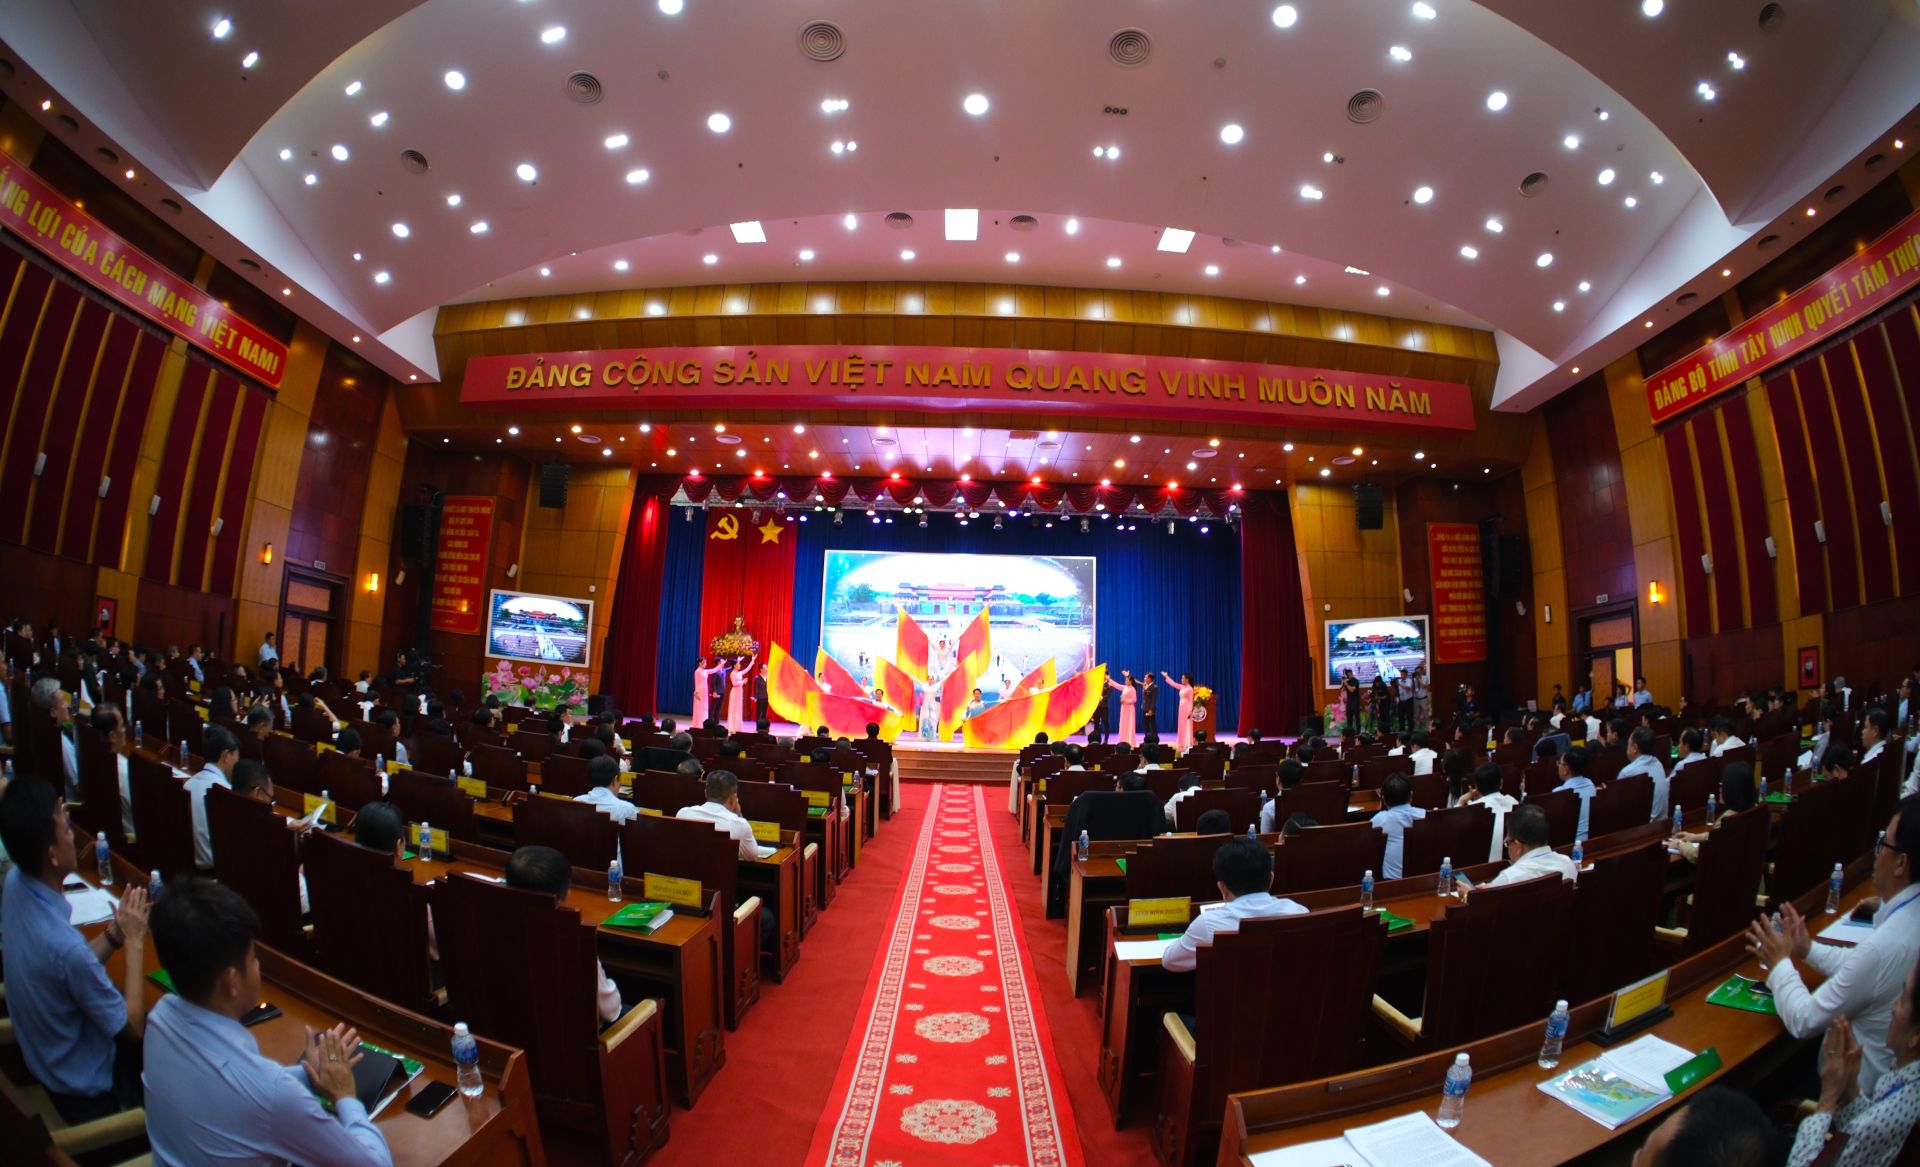 Chương trình văn nghệ chào mừng hội nghị công bố quy hoạch tỉnh Tây Ninh thời kỳ 2021-2030, tầm nhìn đến năm 2050.